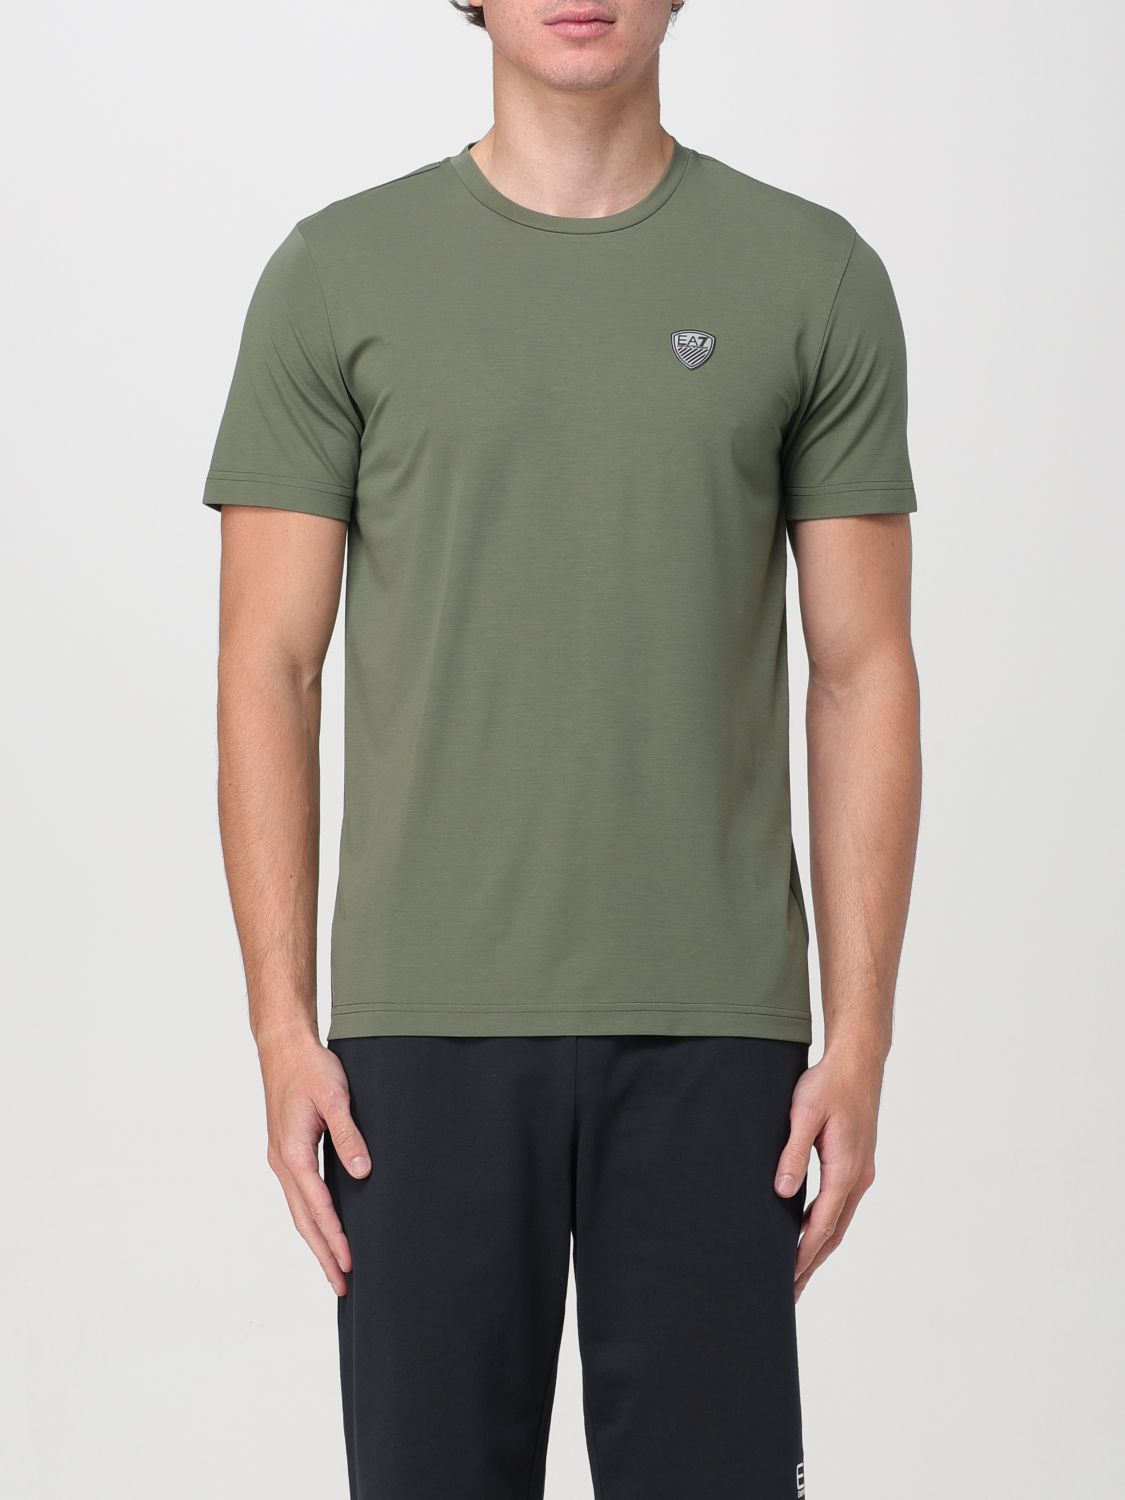 EA7 T-Shirt EA7 Men color Military